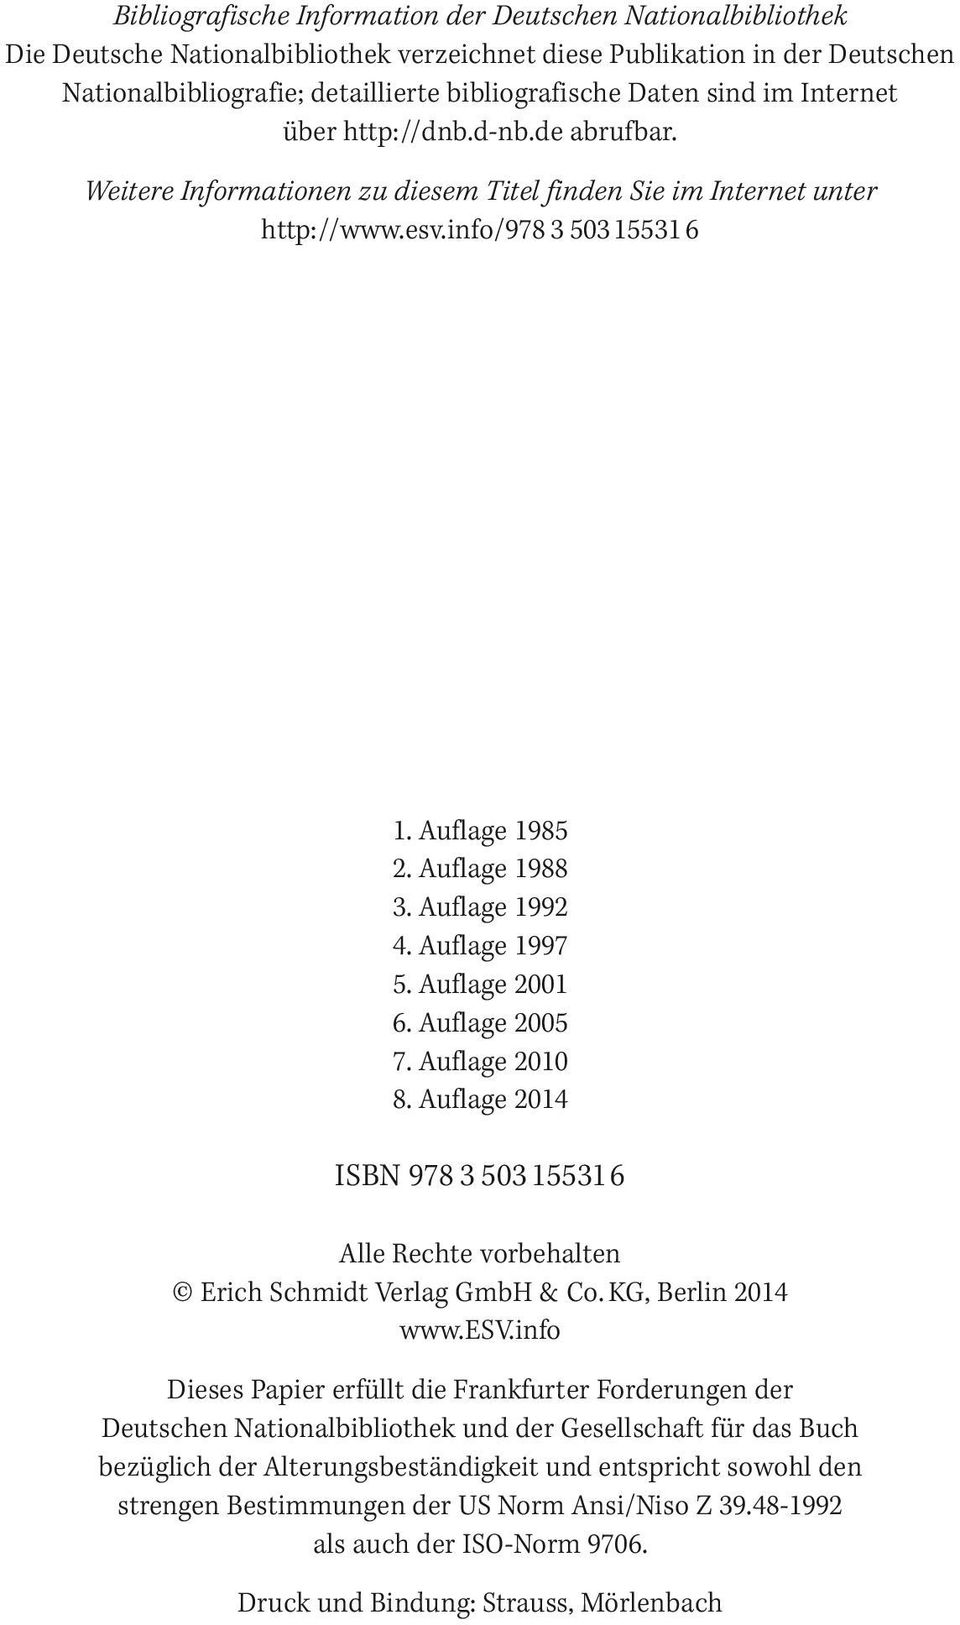 Auflage 1992 4. Auflage 1997 5. Auflage 2001 6. Auflage 2005 7. Auflage 2010 8. Auflage 2014 ISBN 978 3 503 15531 6 Alle Rechte vorbehalten Erich Schmidt Verlag GmbH & Co. KG, Berlin 2014 www.esv.